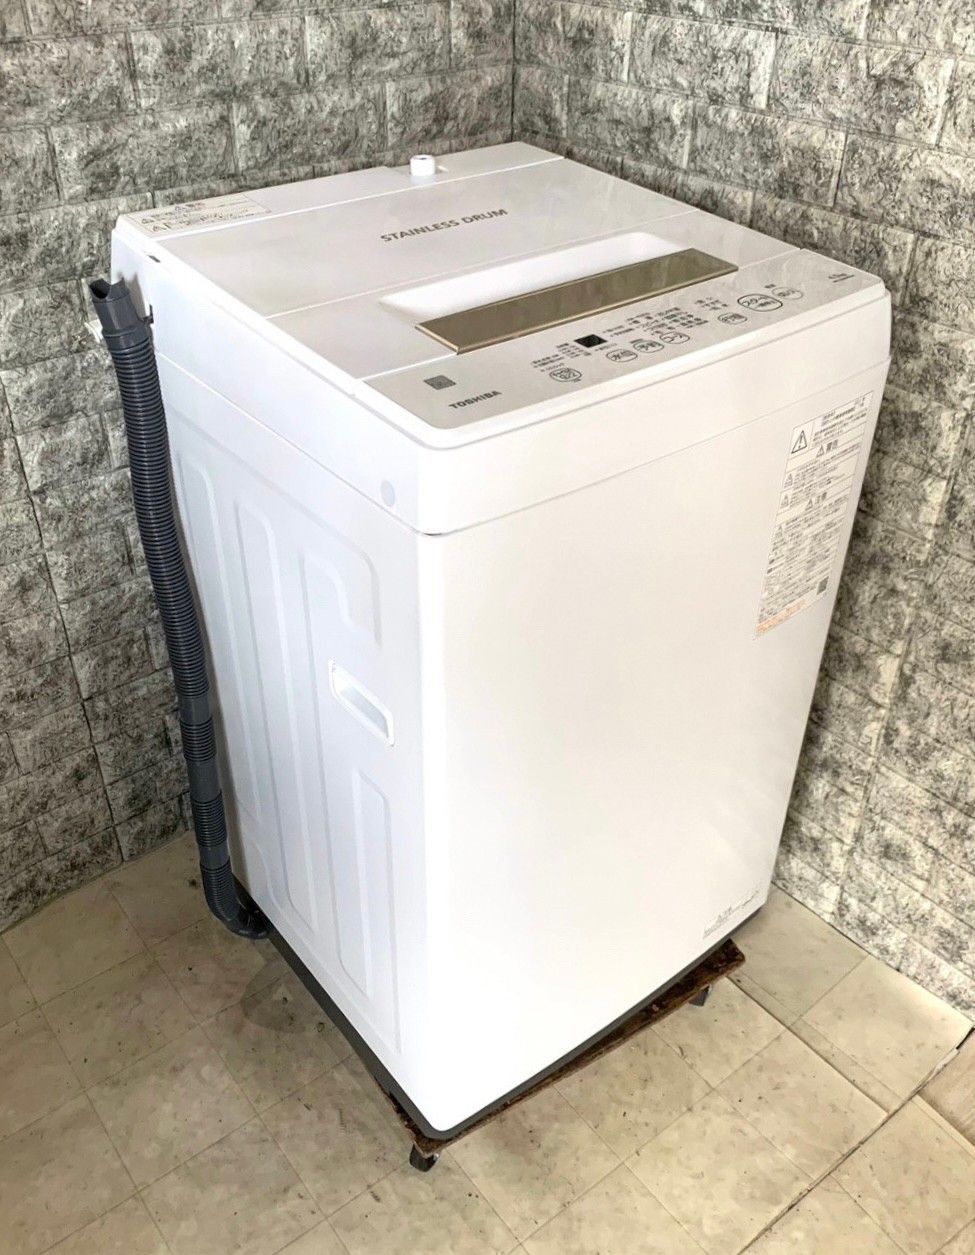 東芝 6kg洗濯機 2020年製 AW-6GB【モノ市場東浦店】41 - 洗濯機